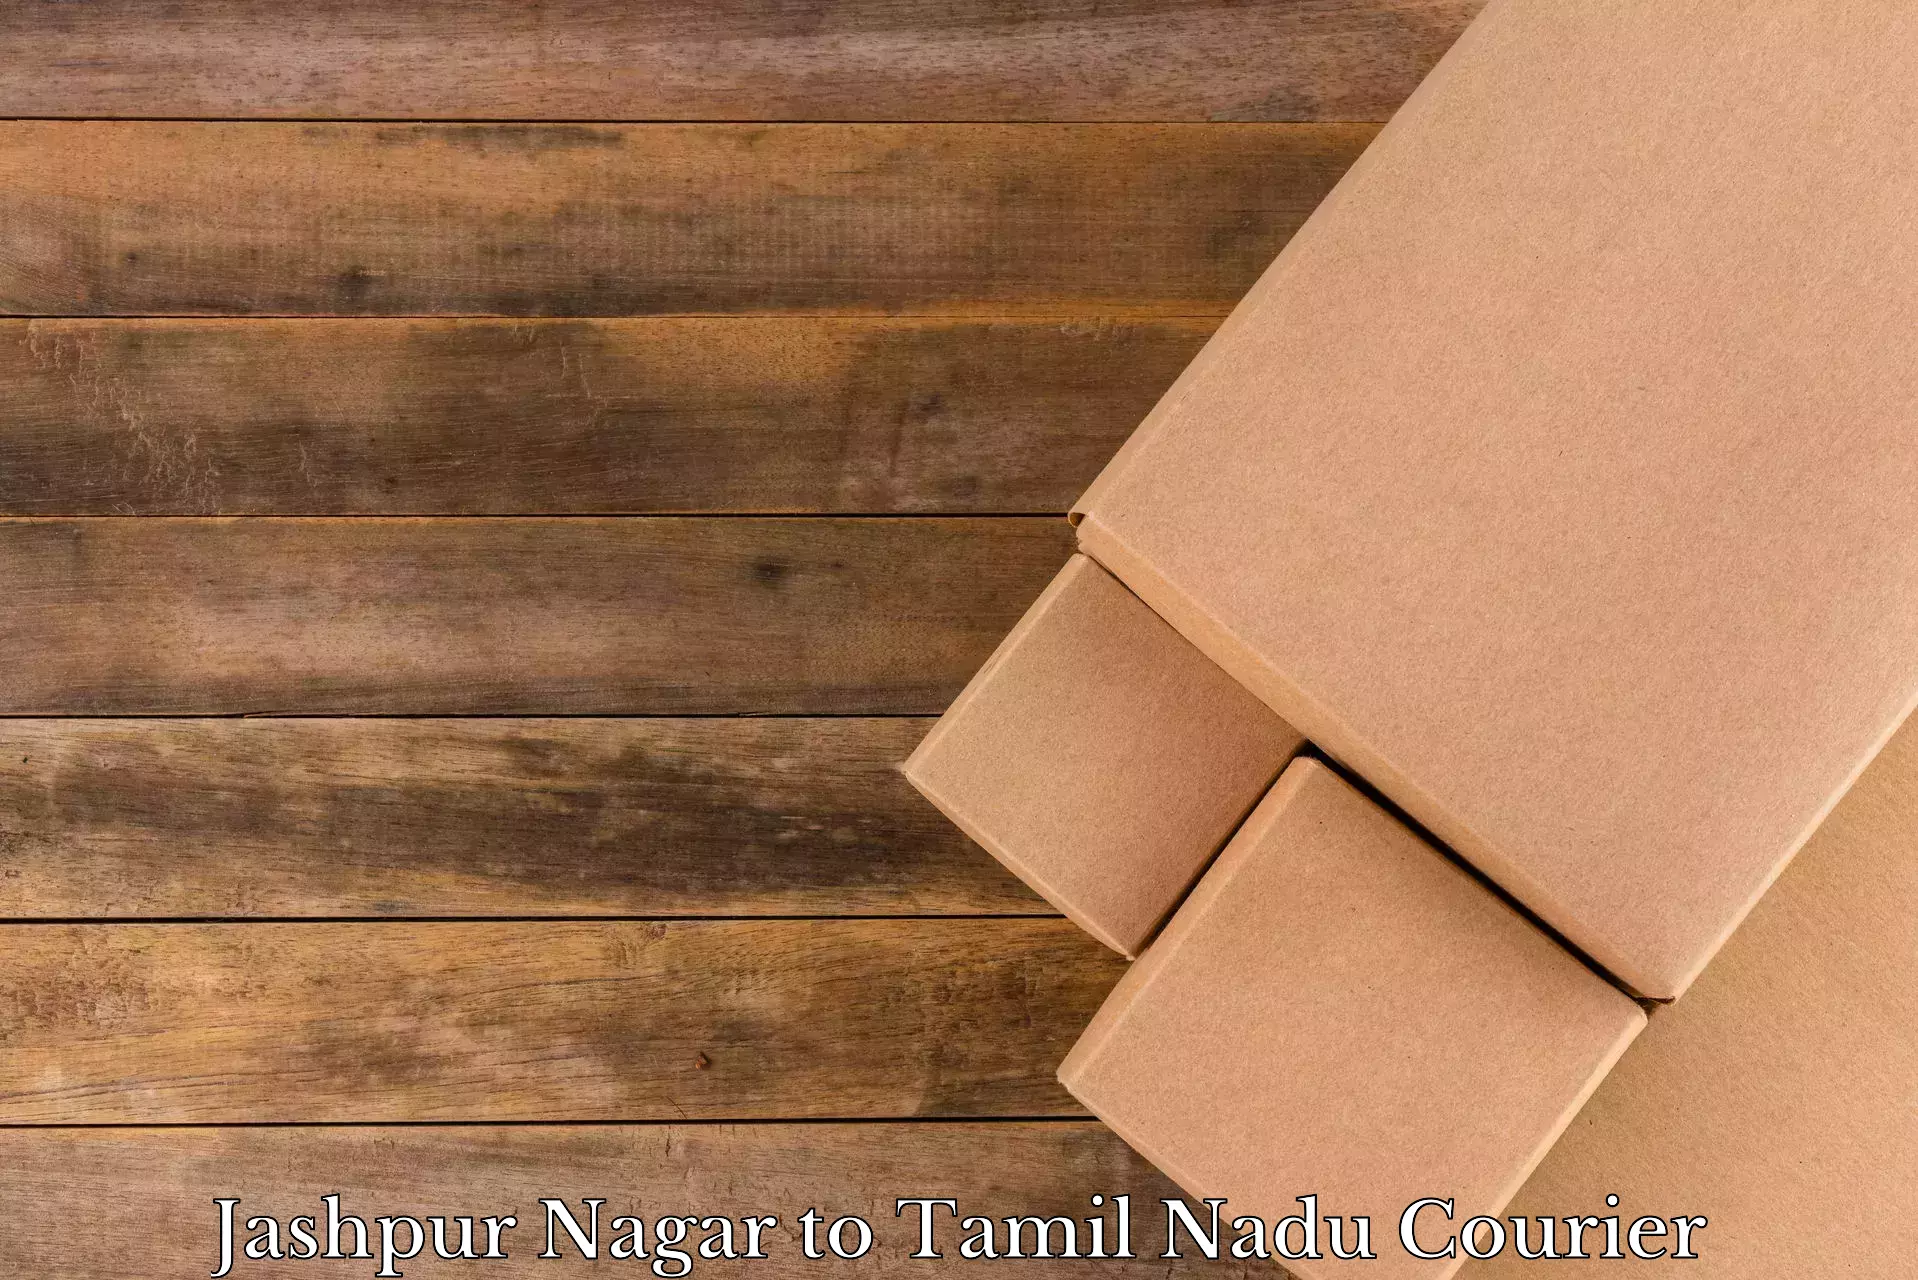 Trusted moving company Jashpur Nagar to Tamil Nadu